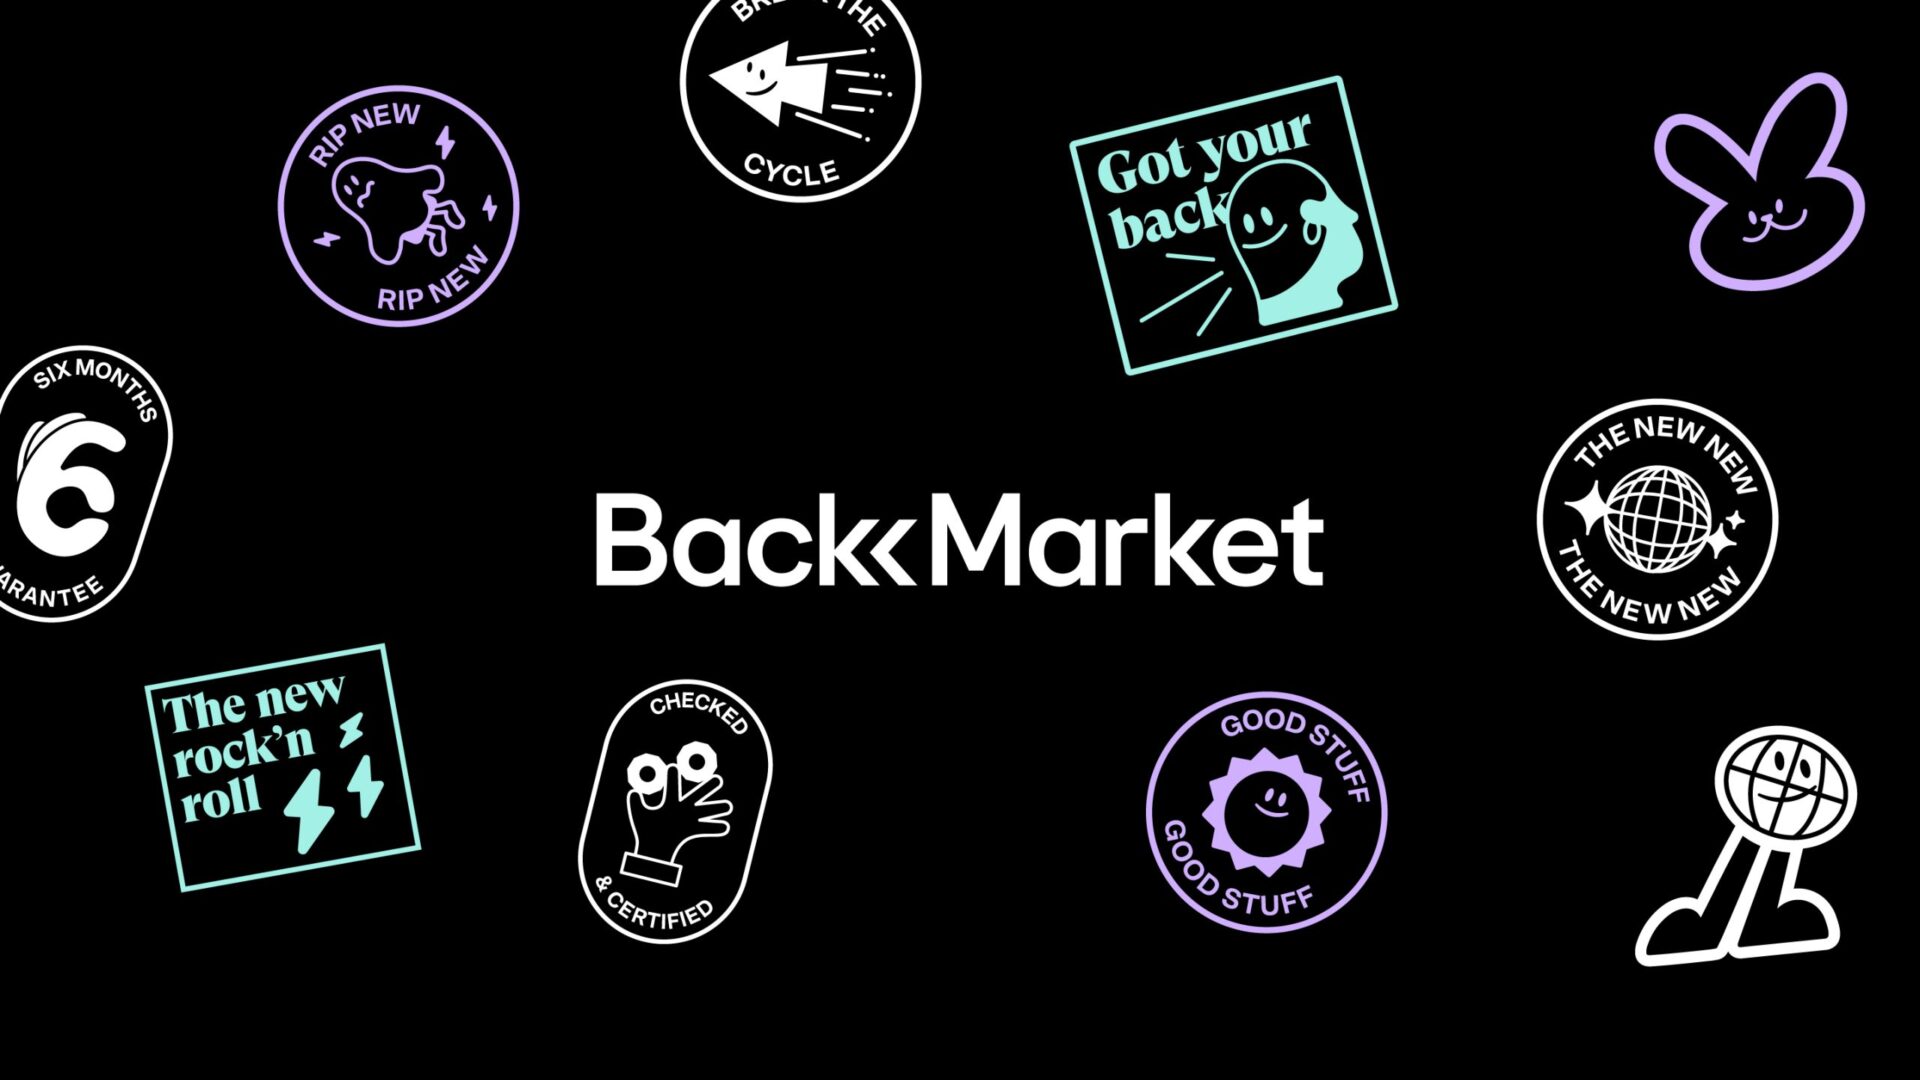 Back Market Business Model | The Brand Hopper